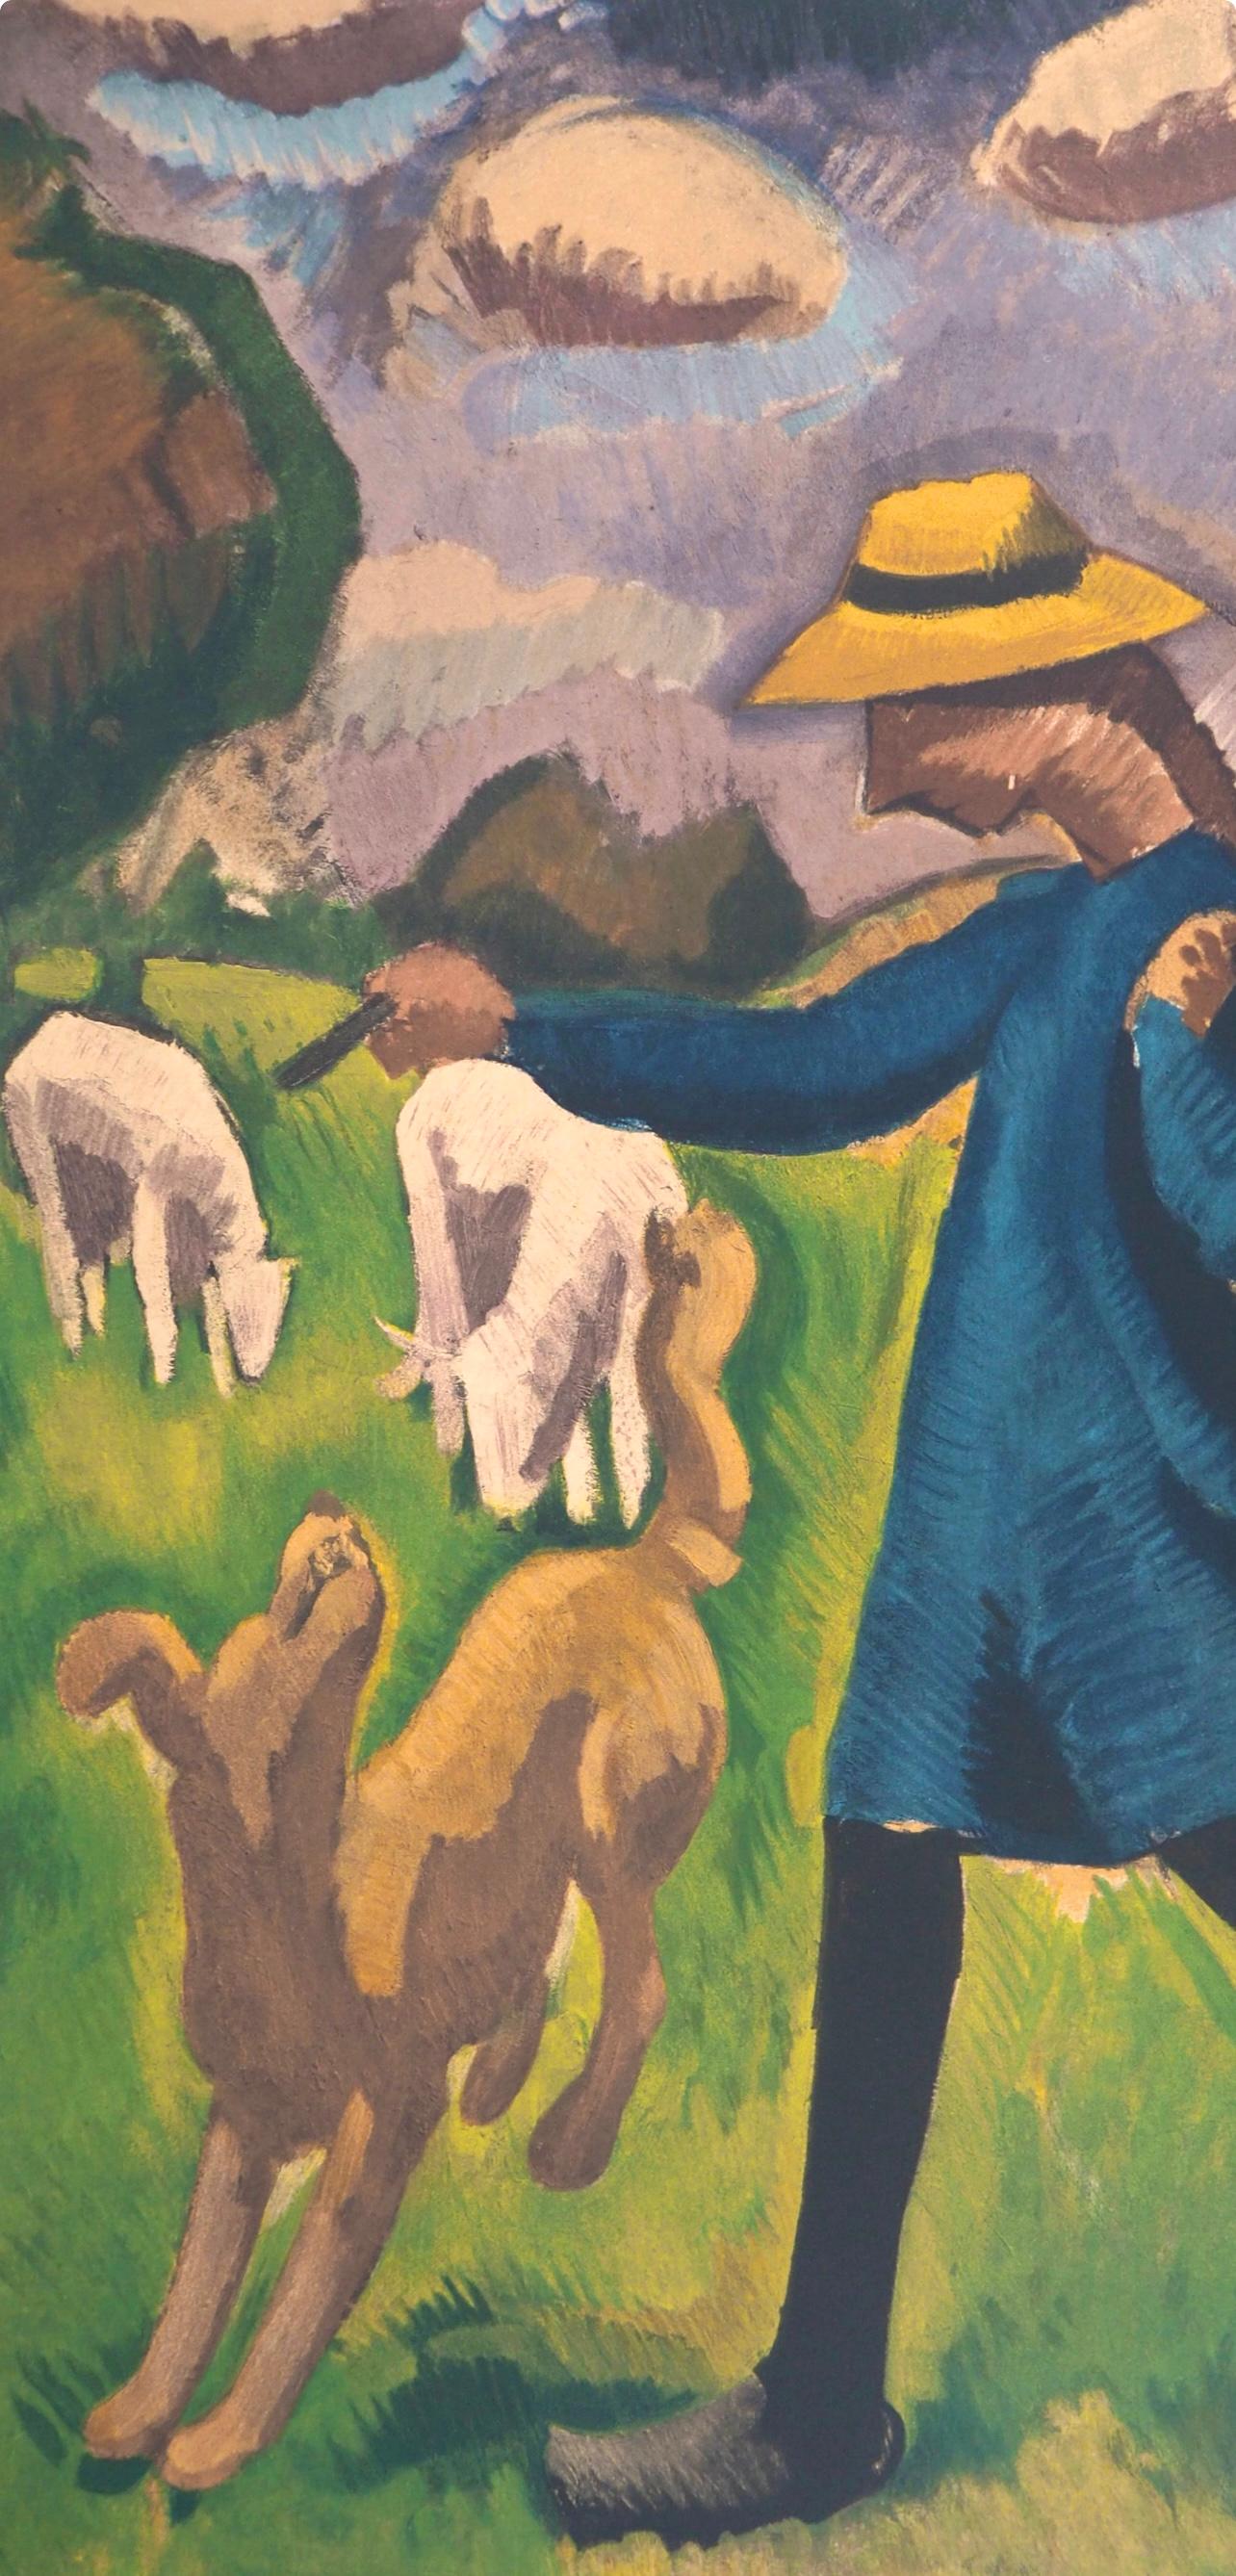 de La Fresnaye, Gardeuse de moutons, Roger de La Fresnaye (after) - Modern Print by Roger de la Fresnaye